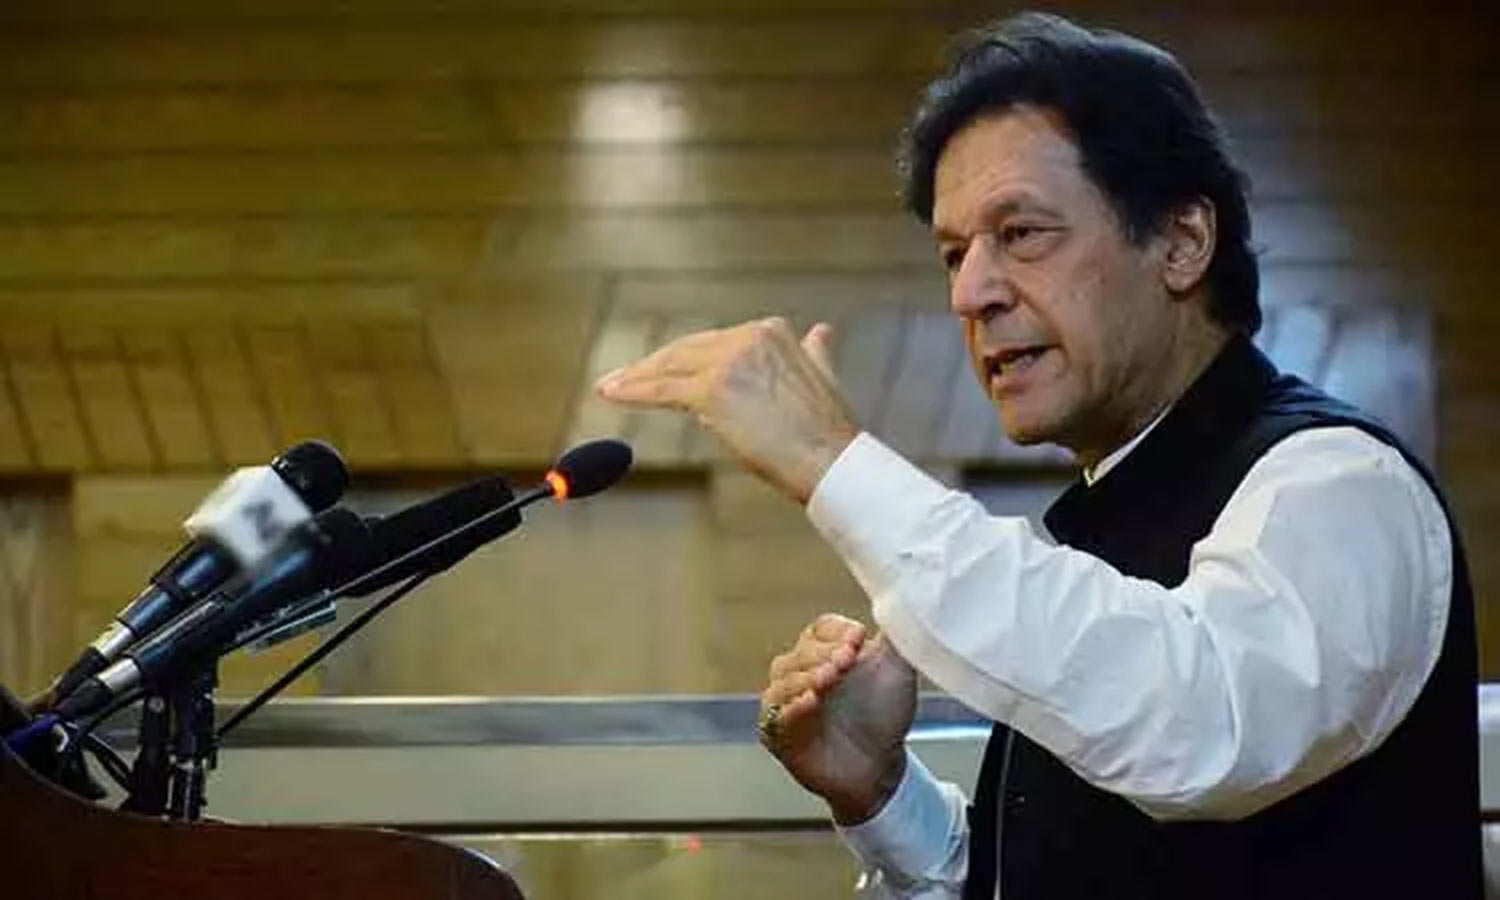 Imran Khan memperingatkan konflik yang belum pernah terjadi sebelumnya